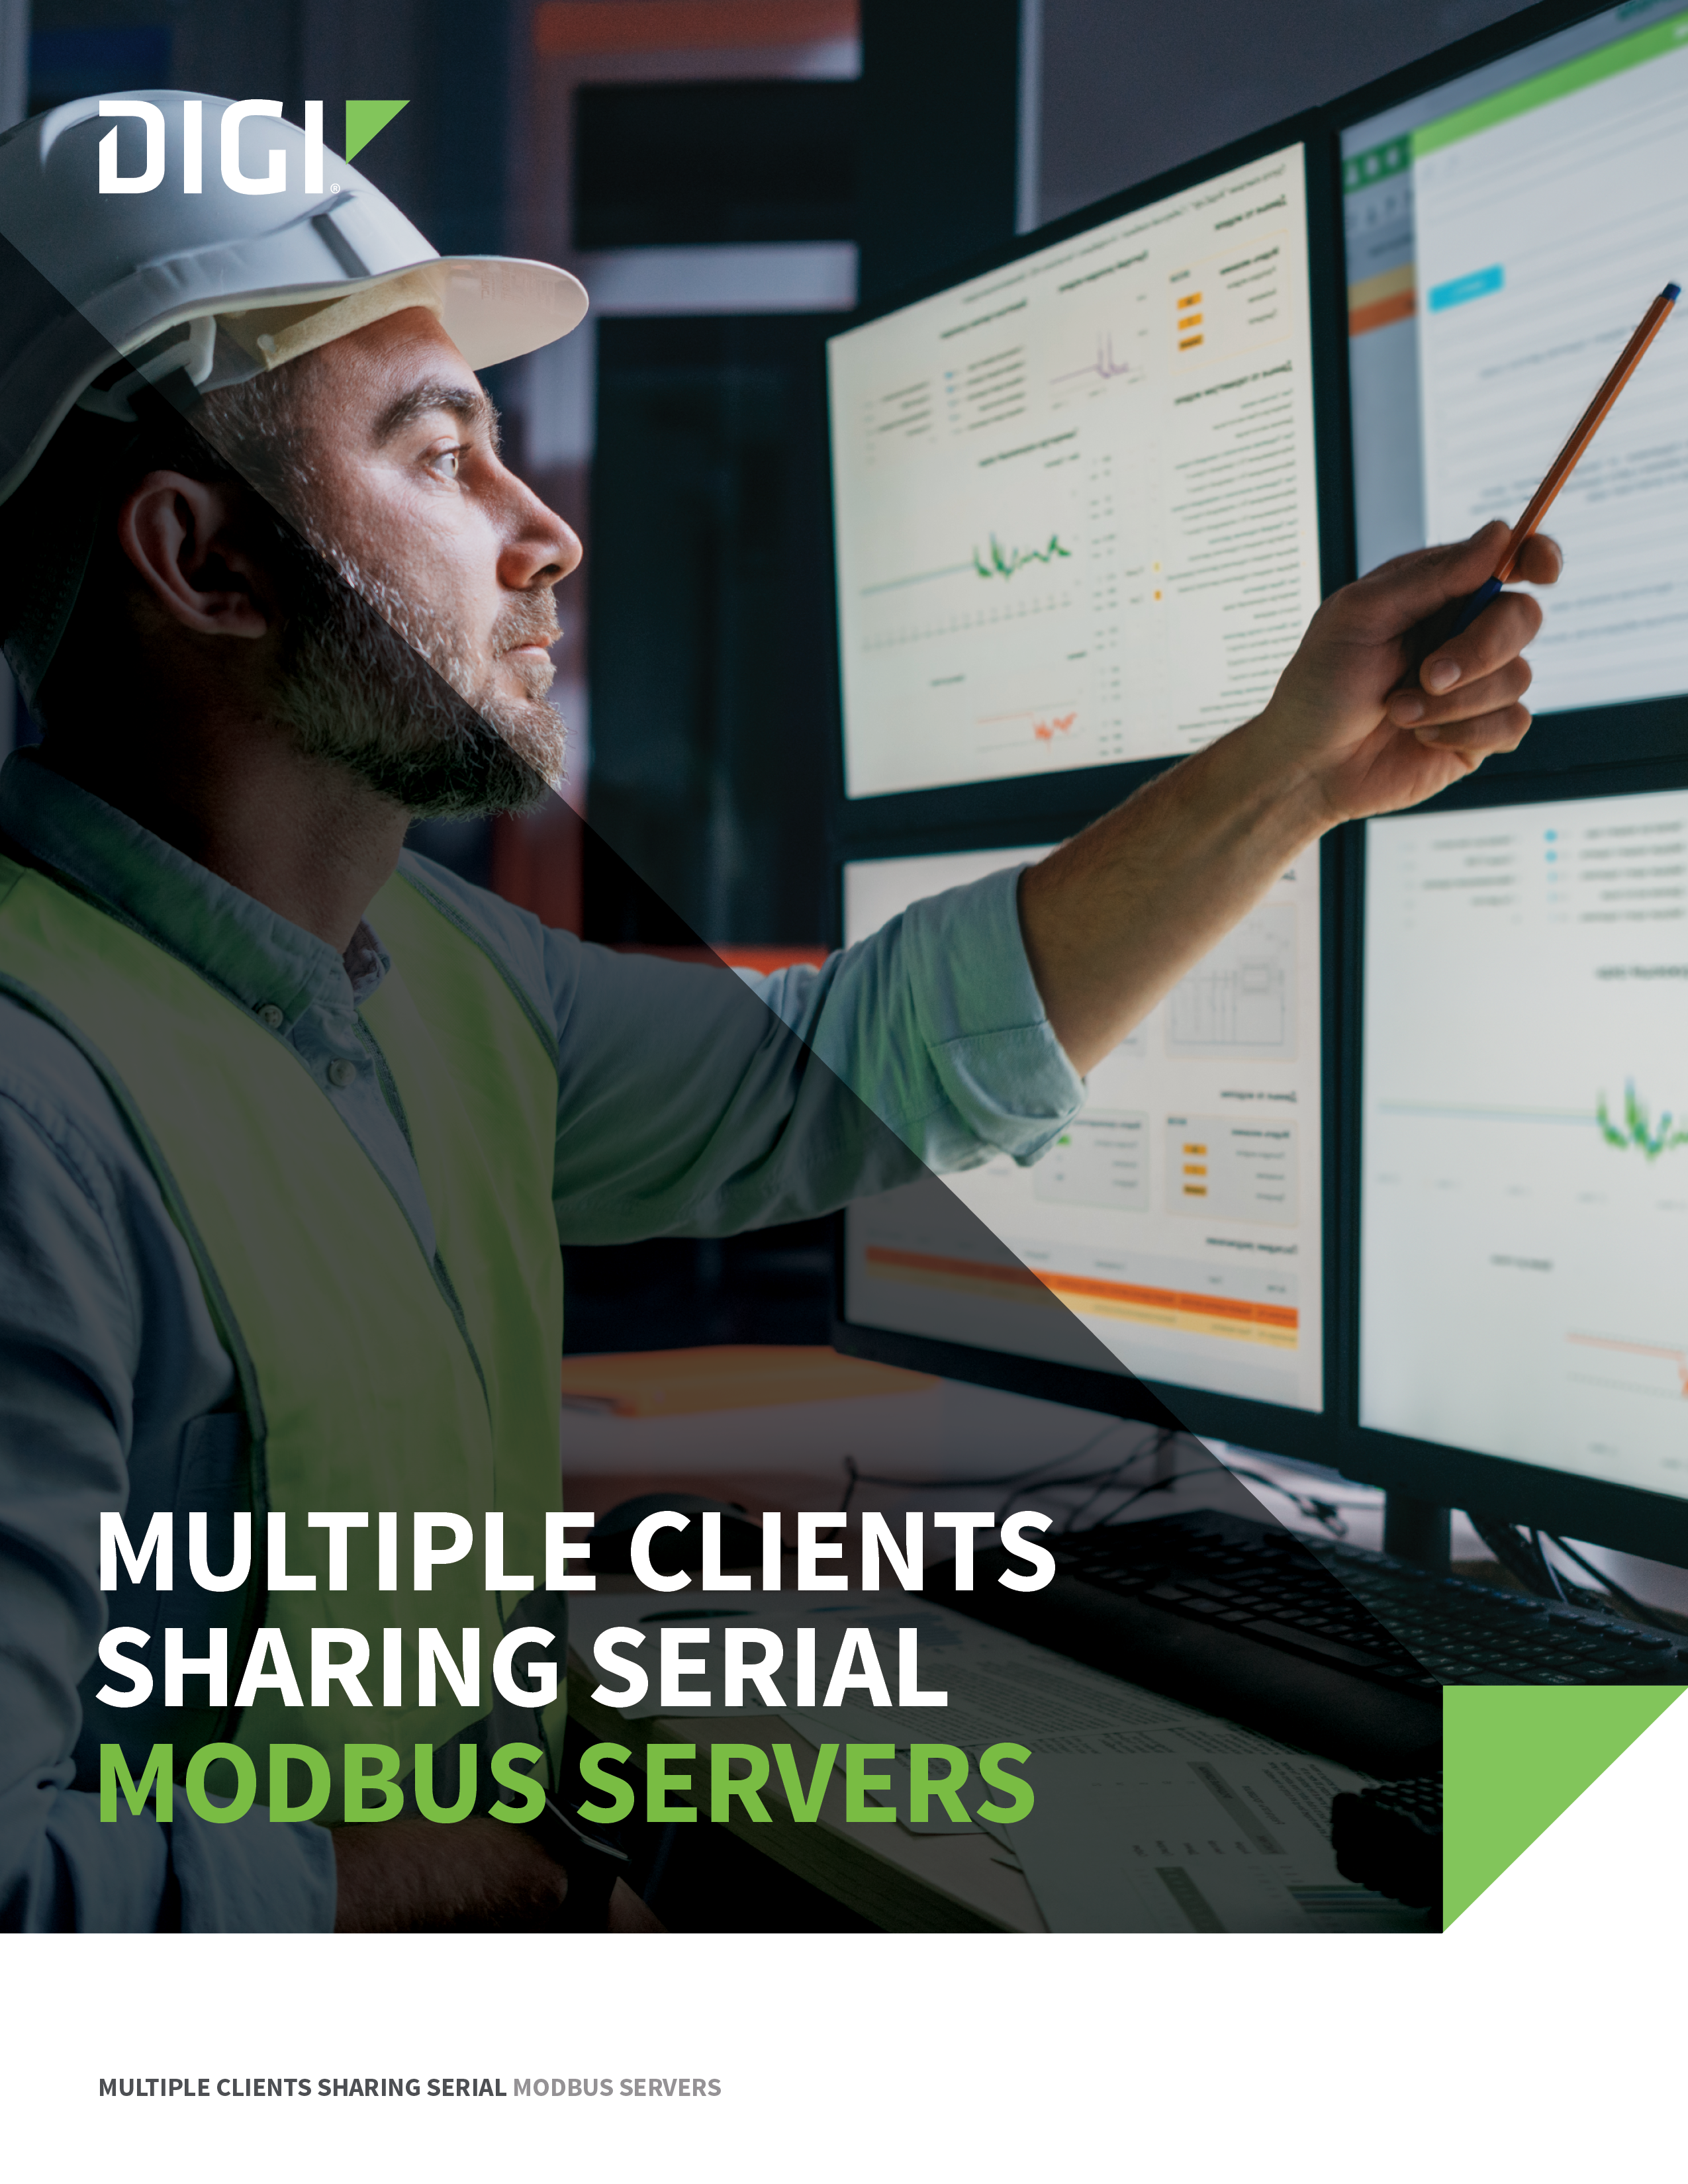 Varios clientes comparten servidores Modbus serie